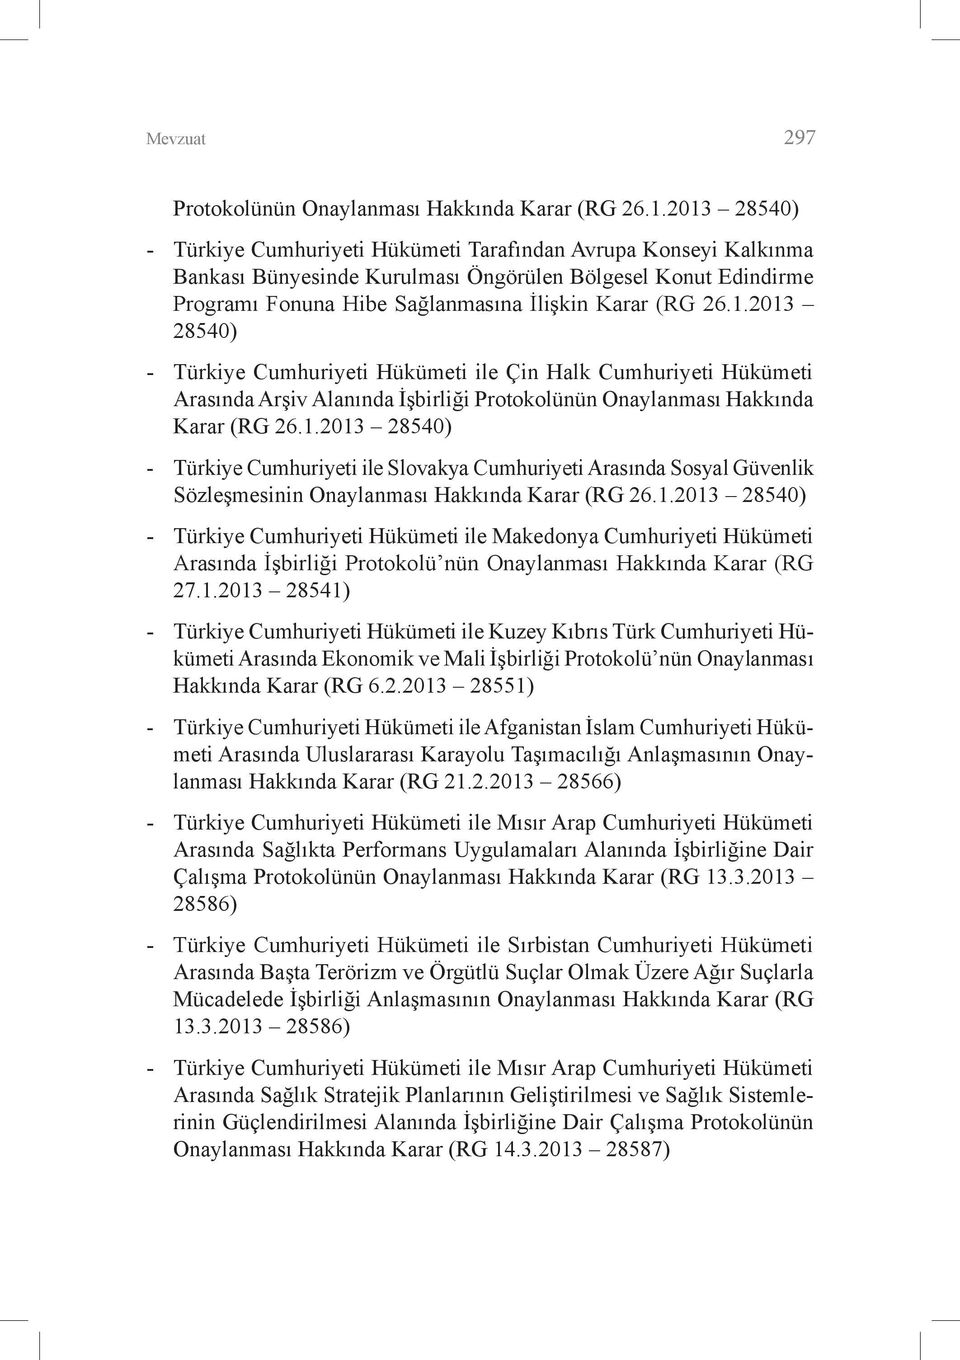 1.2013 28540) - Türkiye Cumhuriyeti ile Slovakya Cumhuriyeti Arasında Sosyal Güvenlik Sözleşmesinin Onaylanması Hakkında Karar (RG 26.1.2013 28540) - Türkiye Cumhuriyeti Hükümeti ile Makedonya Cumhuriyeti Hükümeti Arasında İşbirliği Protokolü nün Onaylanması Hakkında Karar (RG 27.